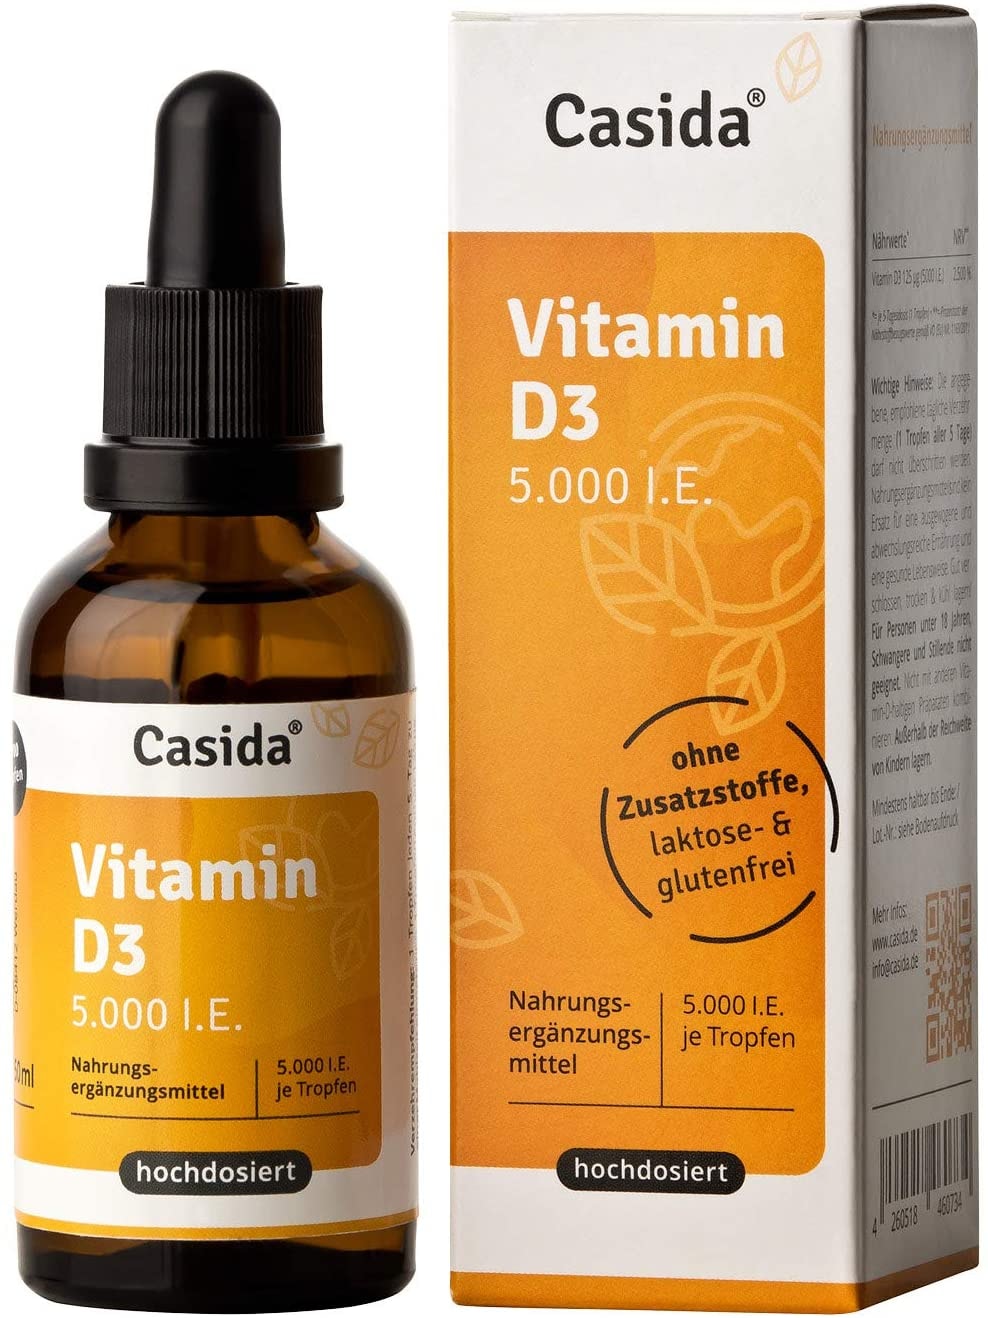 Casida® Vitamin D3 Tropfen 5000 I.E. Hochdosierte, flüssige Vitamin D3 Tropfen, gelöst in hochwertigem MCT Öl - Aus der Apotheke - 50 ml